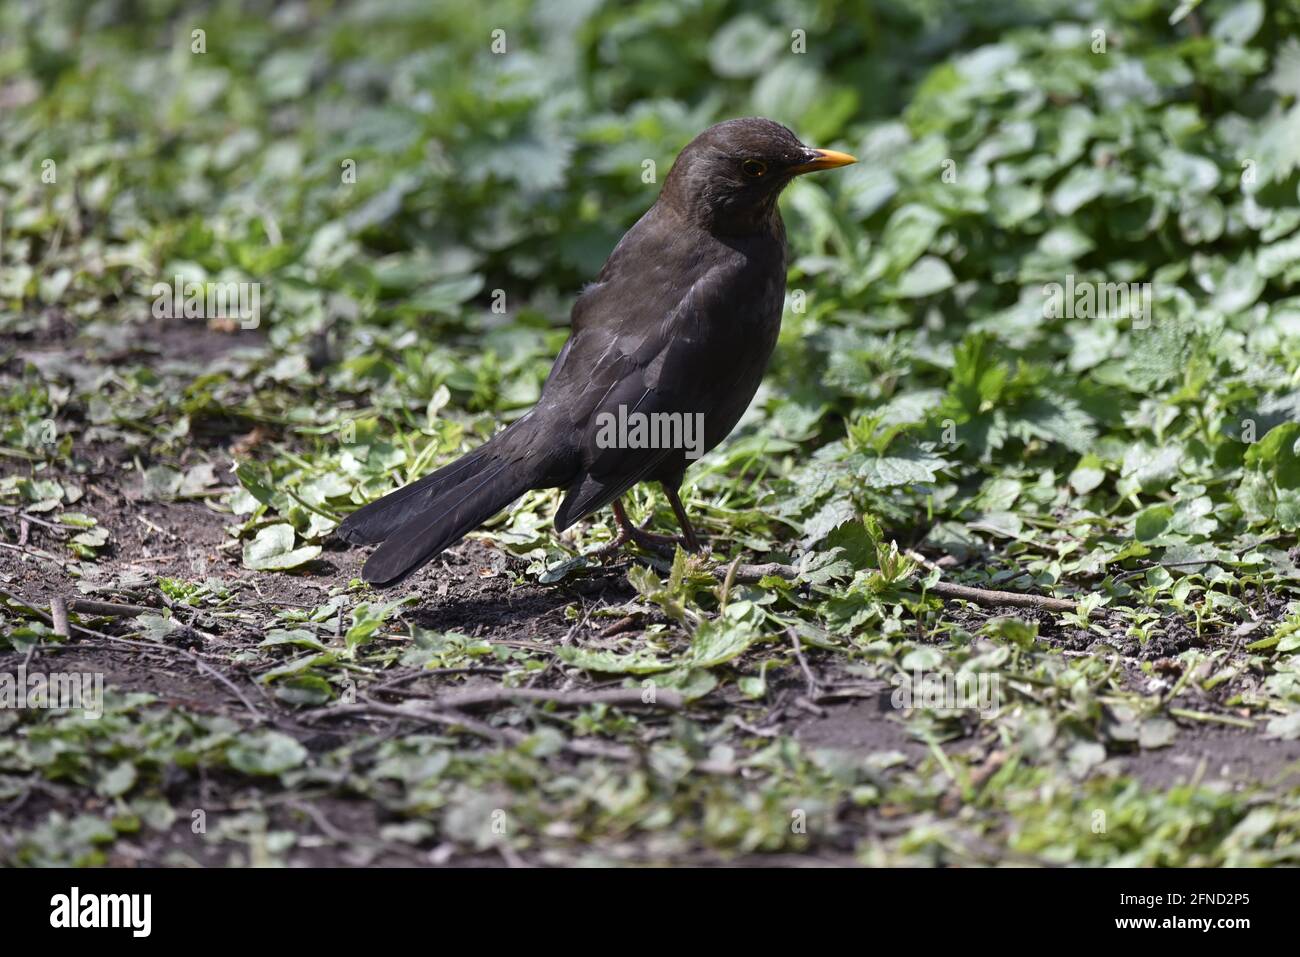 Maschio comune Blackbird (Turdus merula) a terra, destra Proifle, guardando in Green Foliage con testa girata a destra in un Sunny Spring Day nel Regno Unito Foto Stock